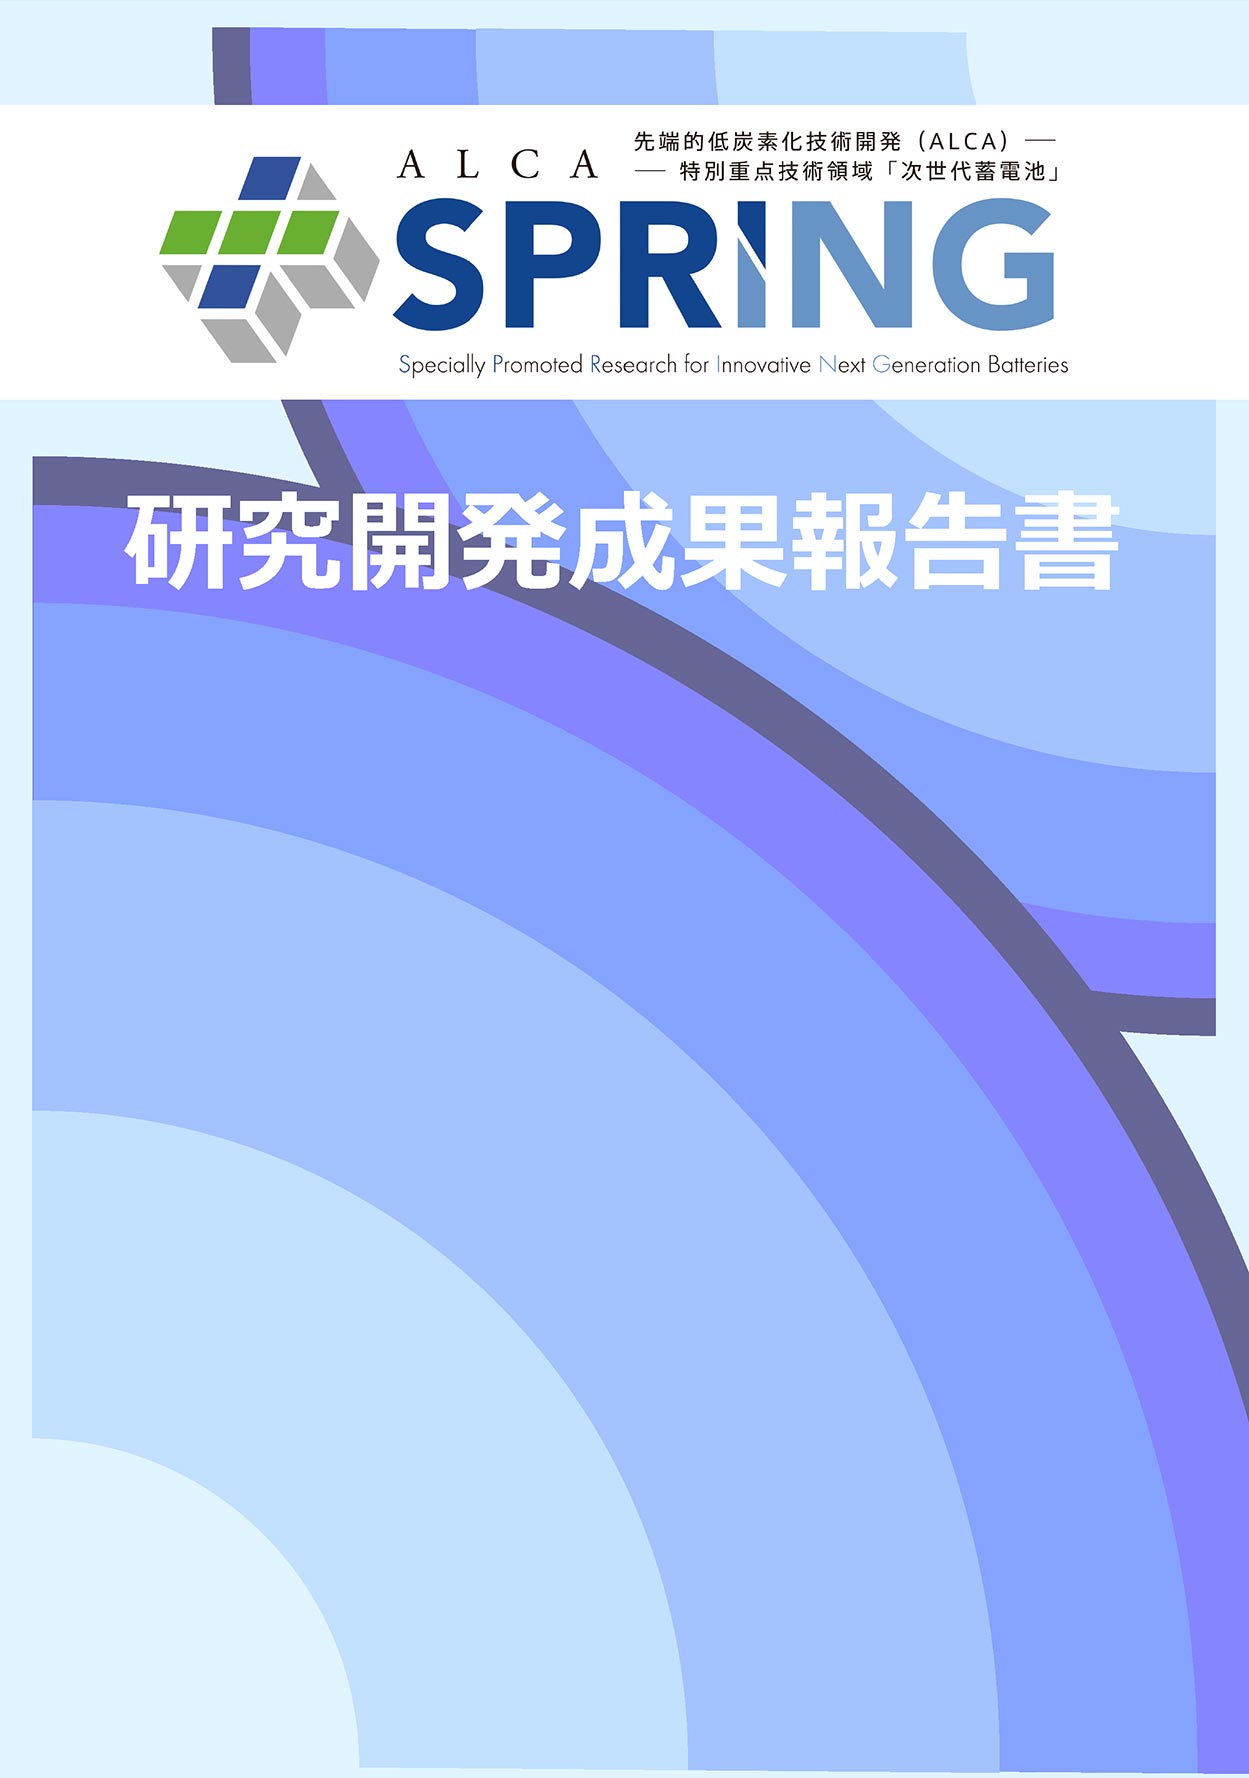 ALCA-SPRING 研究開発成果報告書